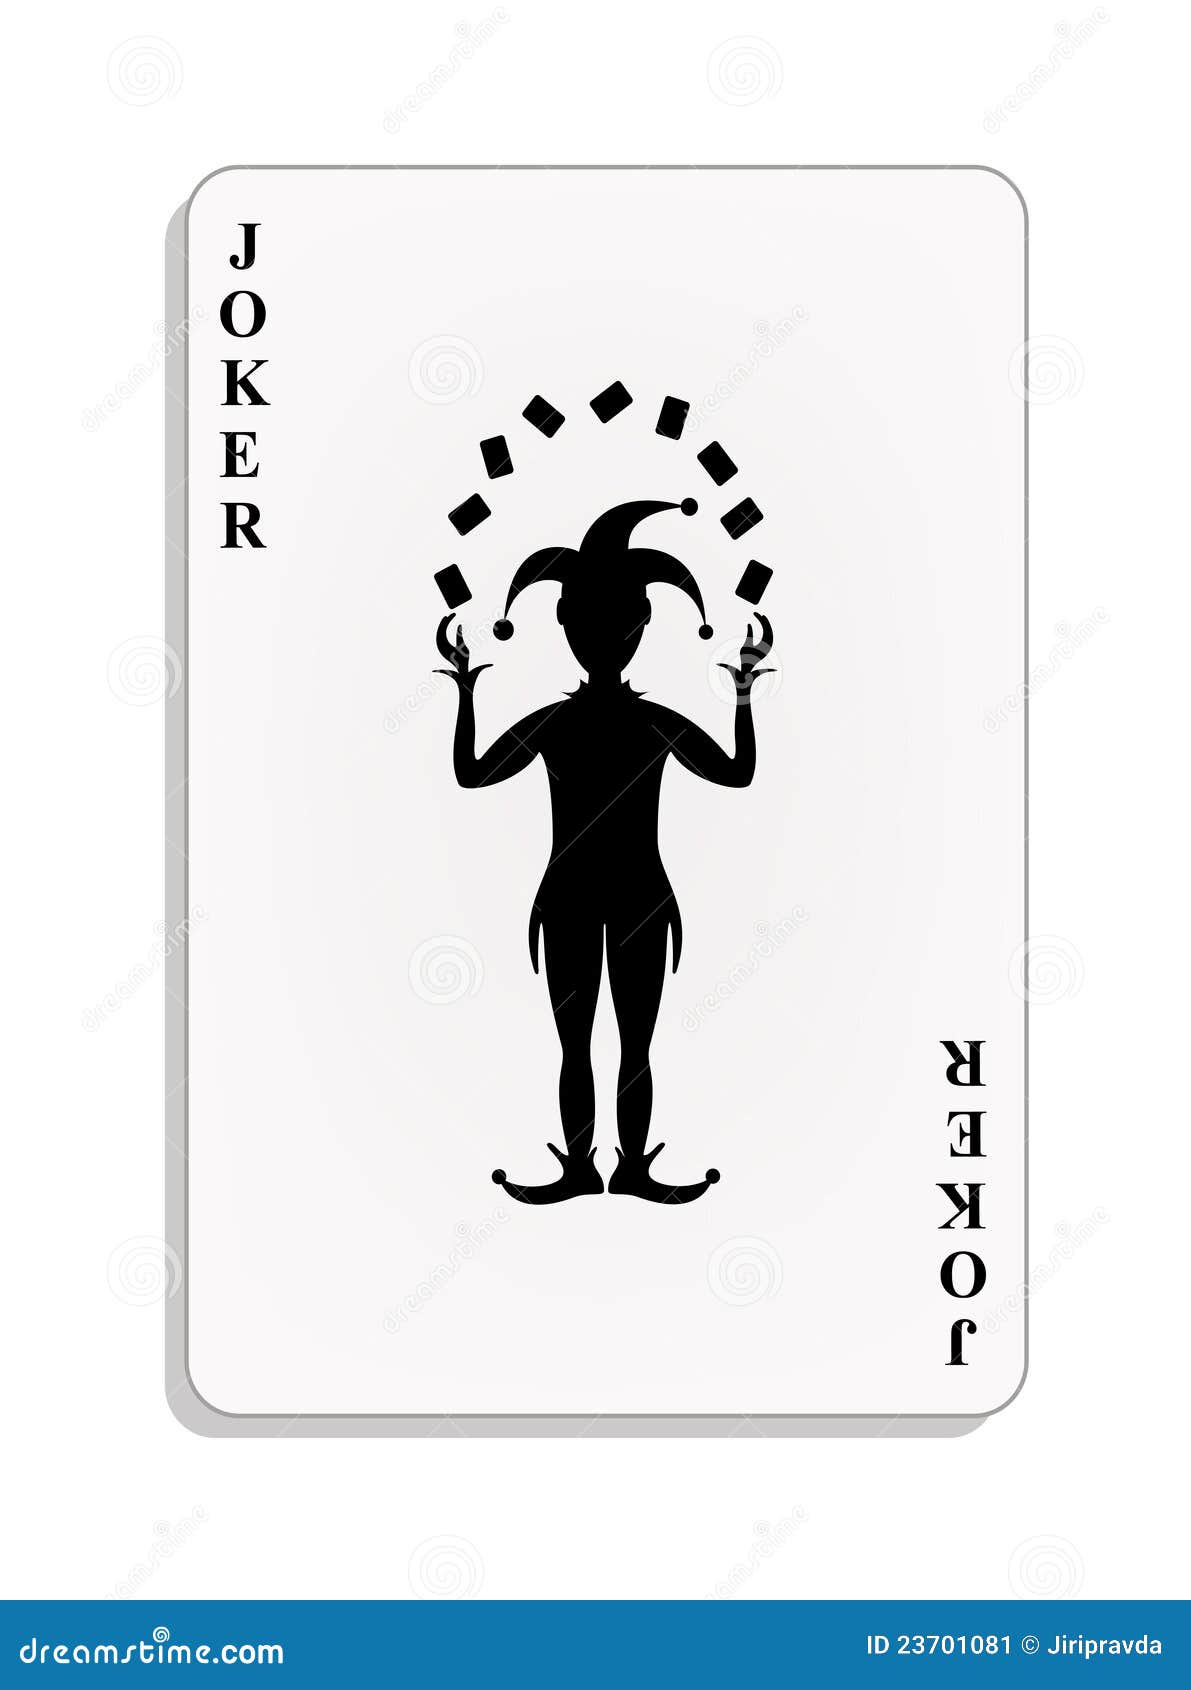 playing card - joker